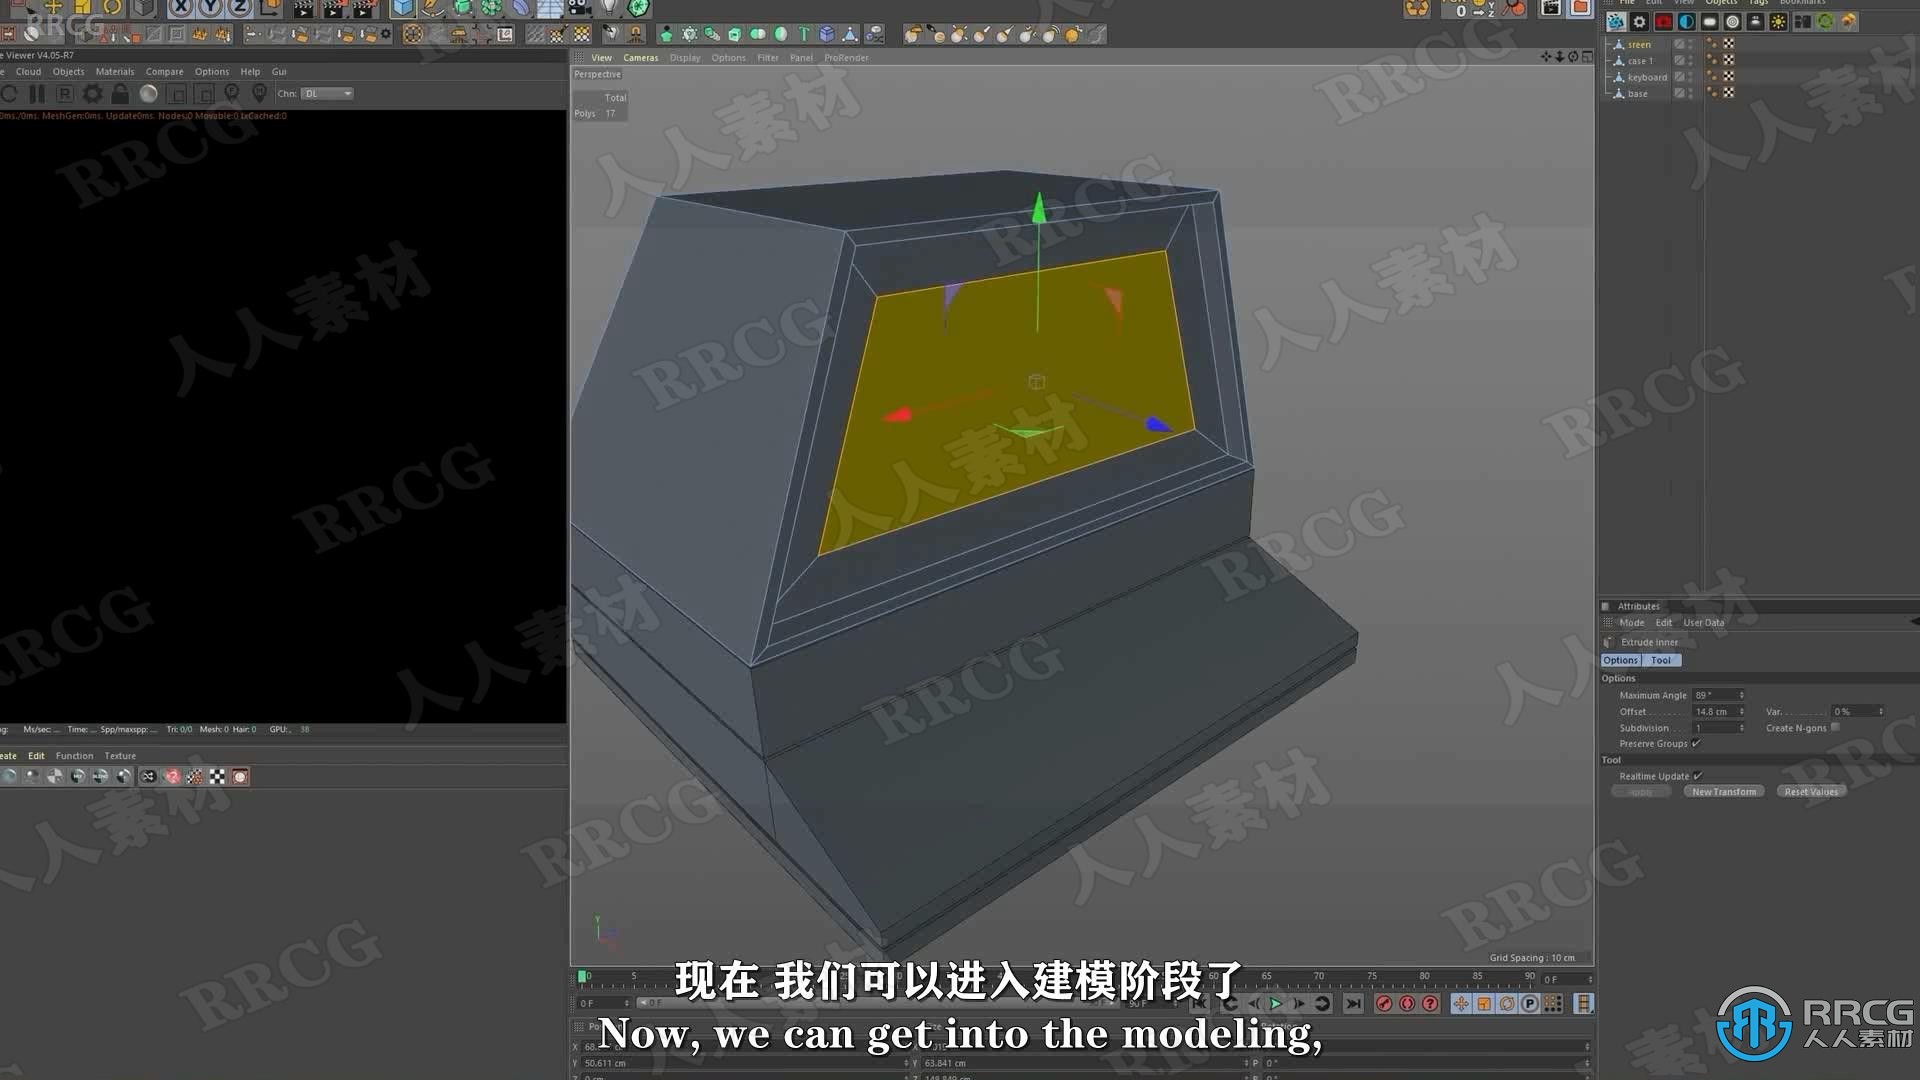 【中文字幕】C4D影视级科幻场景CGI数字艺术制作视频教程